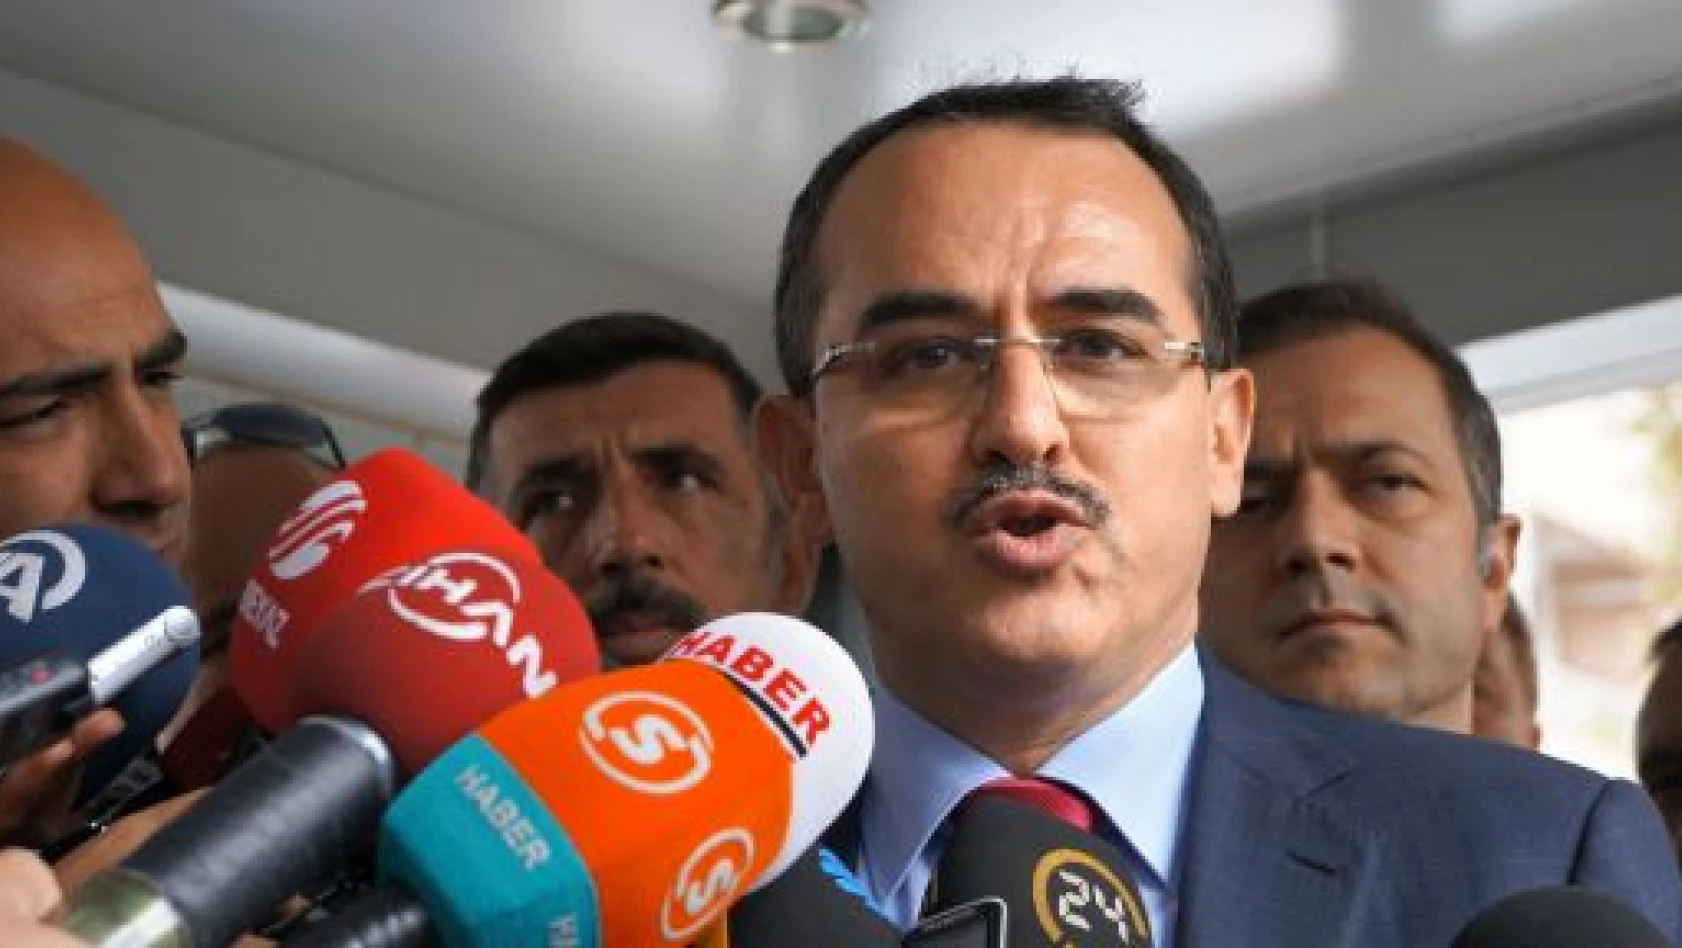 Adalet Bakanı Ergin: Makul öneriler paket içerisinde yer alabilir